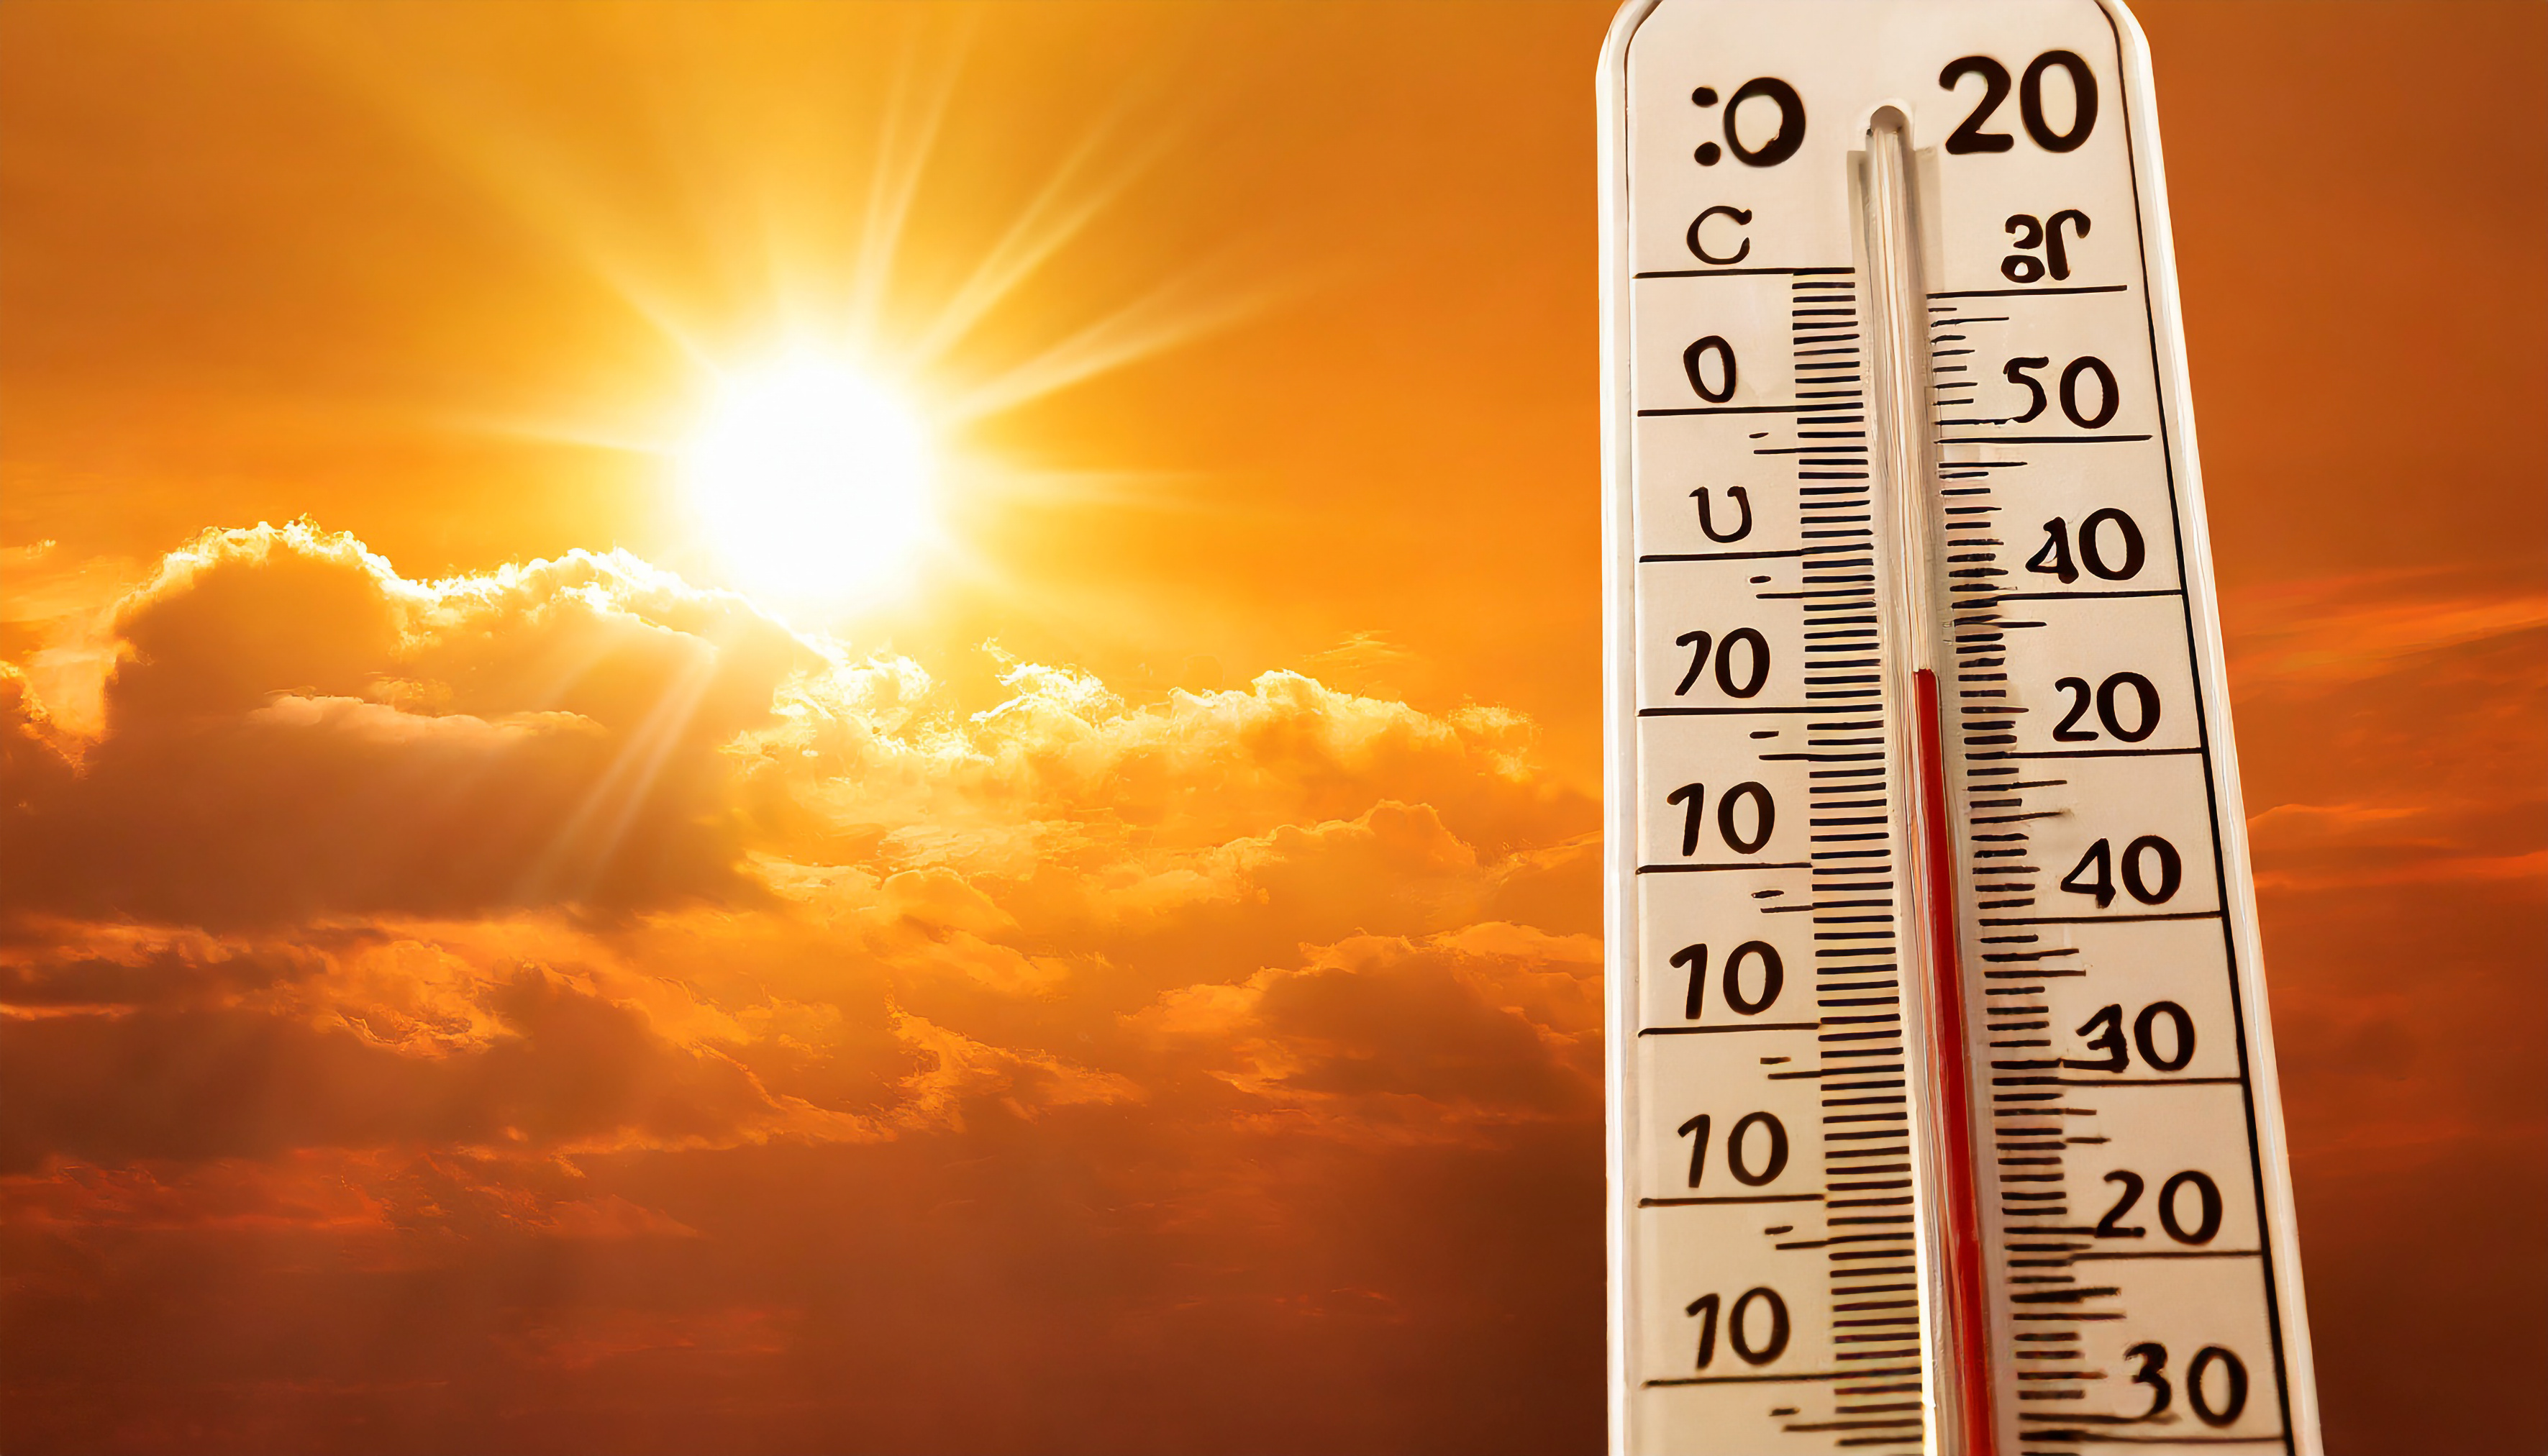 Les températures grimpent et les évènements climatiques extrêmes sont de plus en plus fréquents. © Mary, Adobe Stock